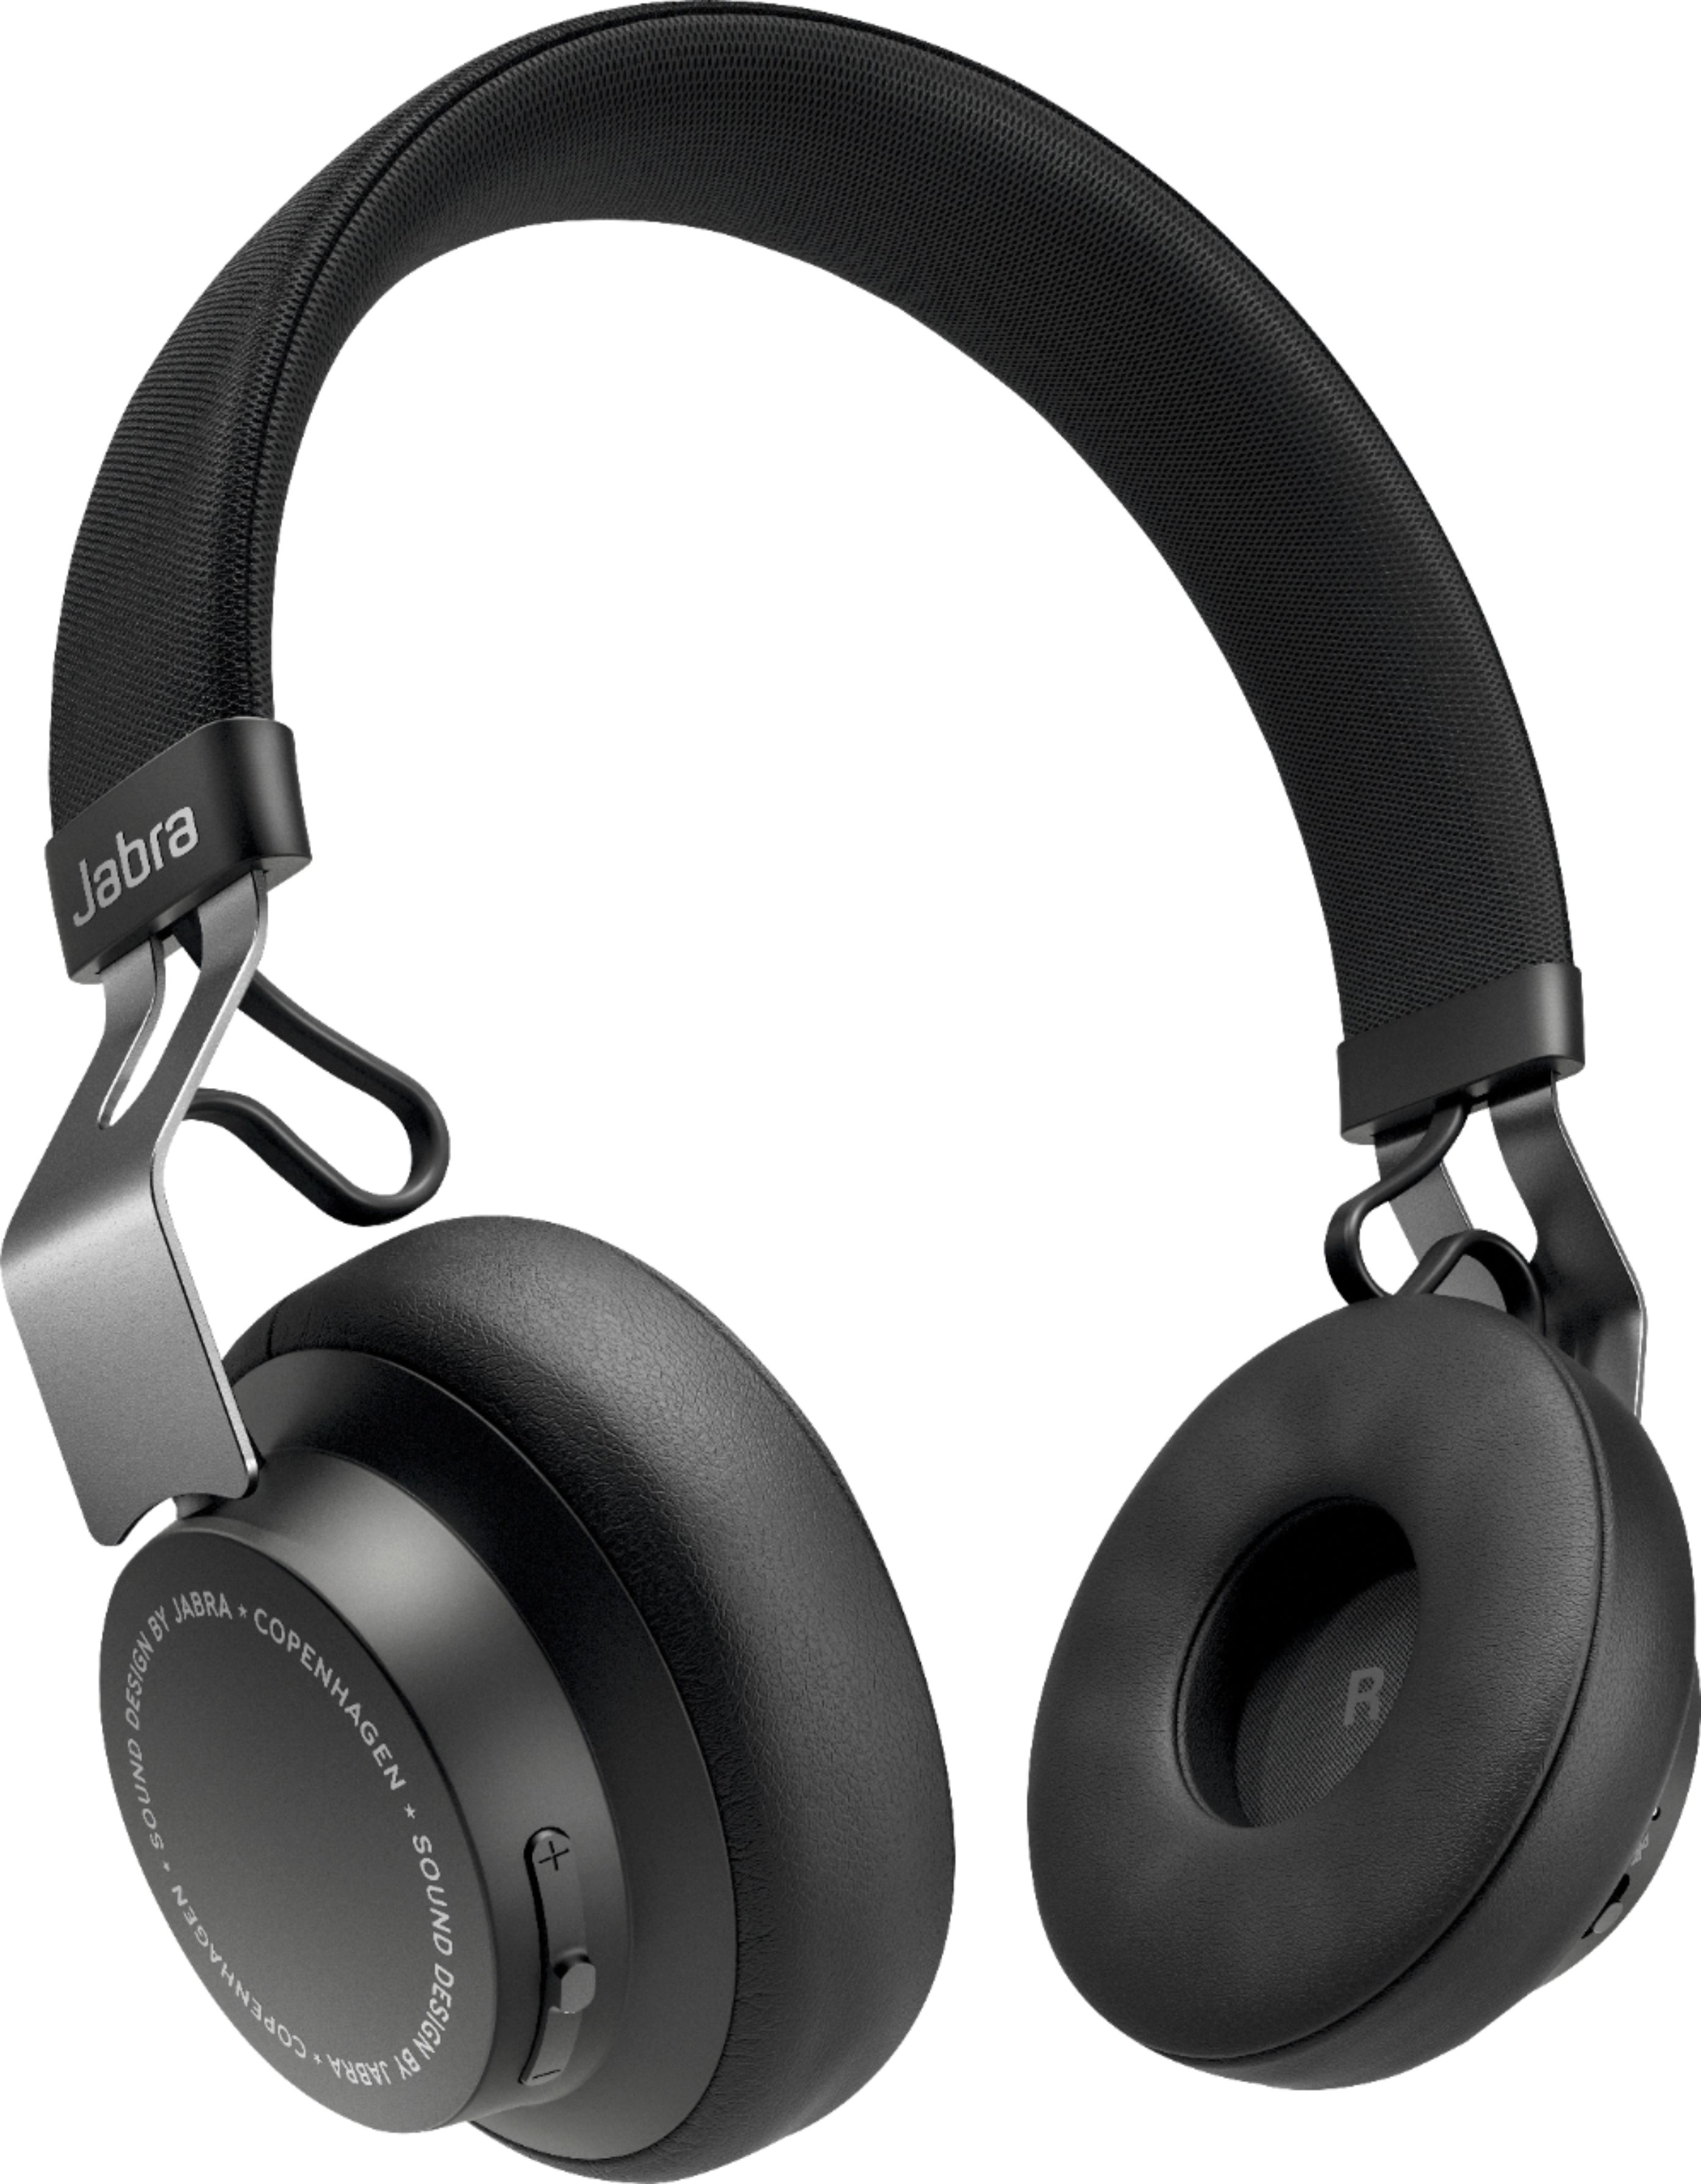 Ontwaken Vooravond Speciaal Jabra Elite 25h Wireless On-Ear Headphones Titanium Black 100-96310000-14 -  Best Buy